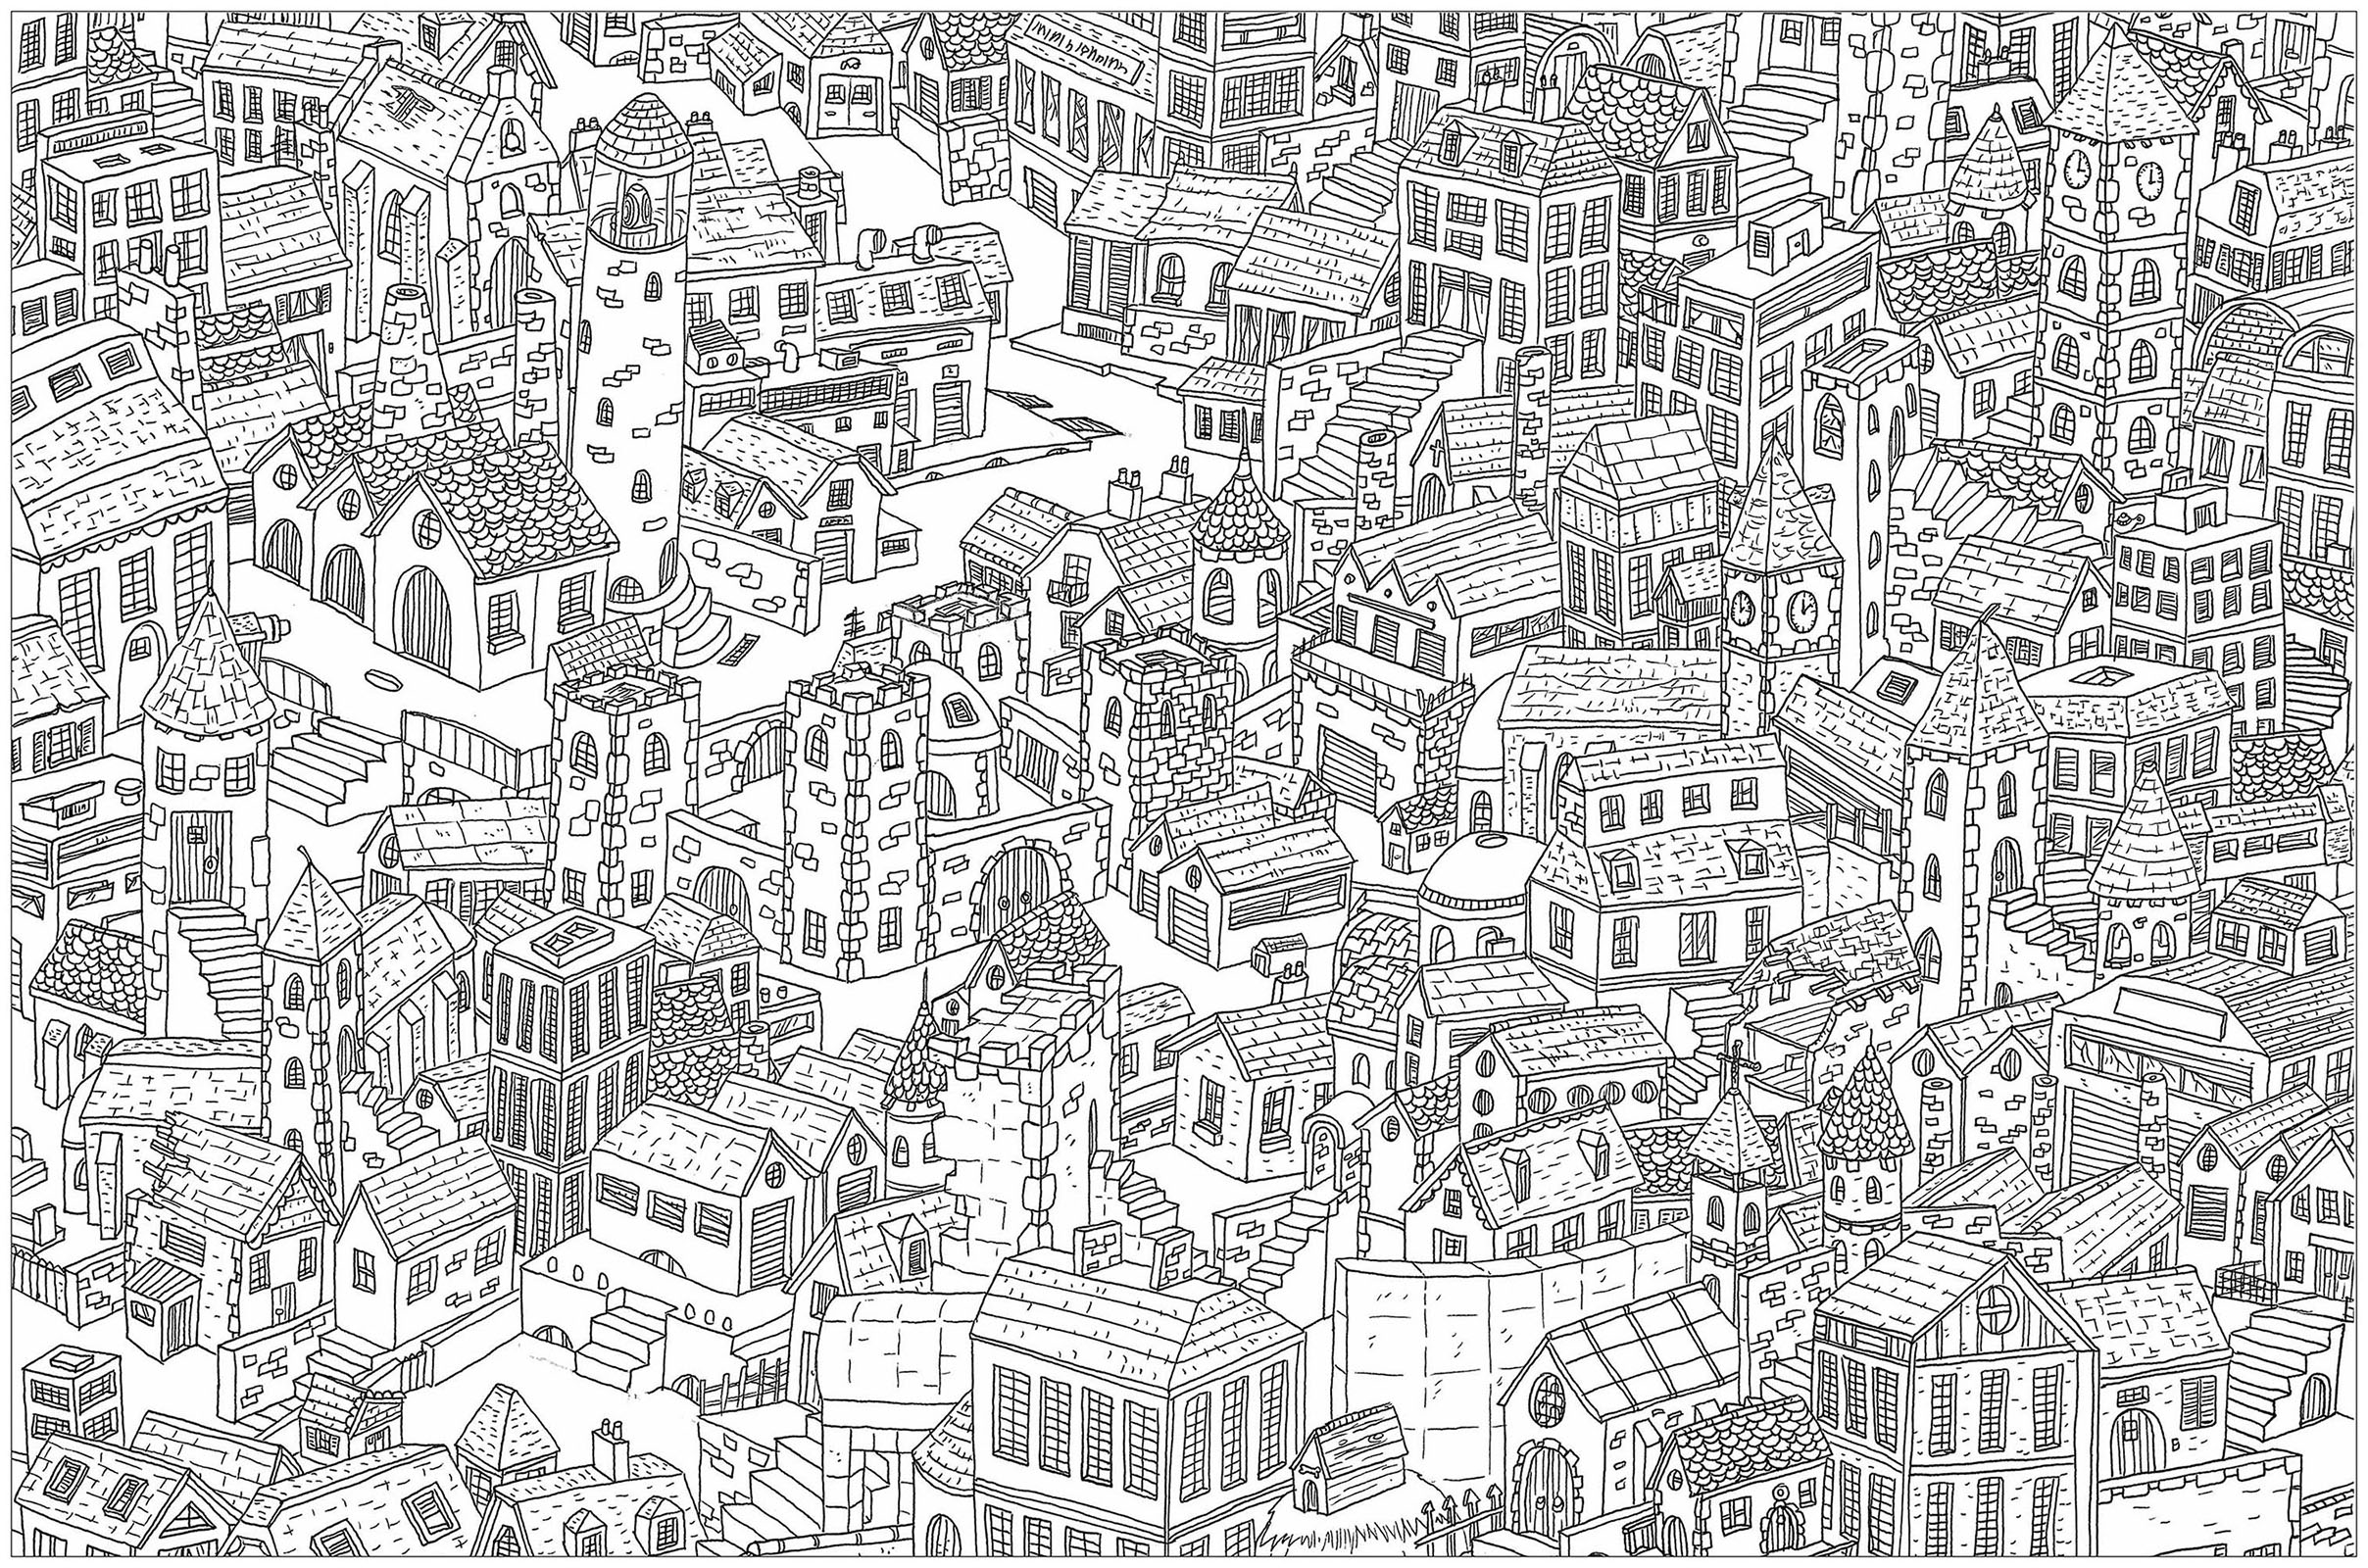 'La ville', un coloriage au style très 'Où est Charlie ?'